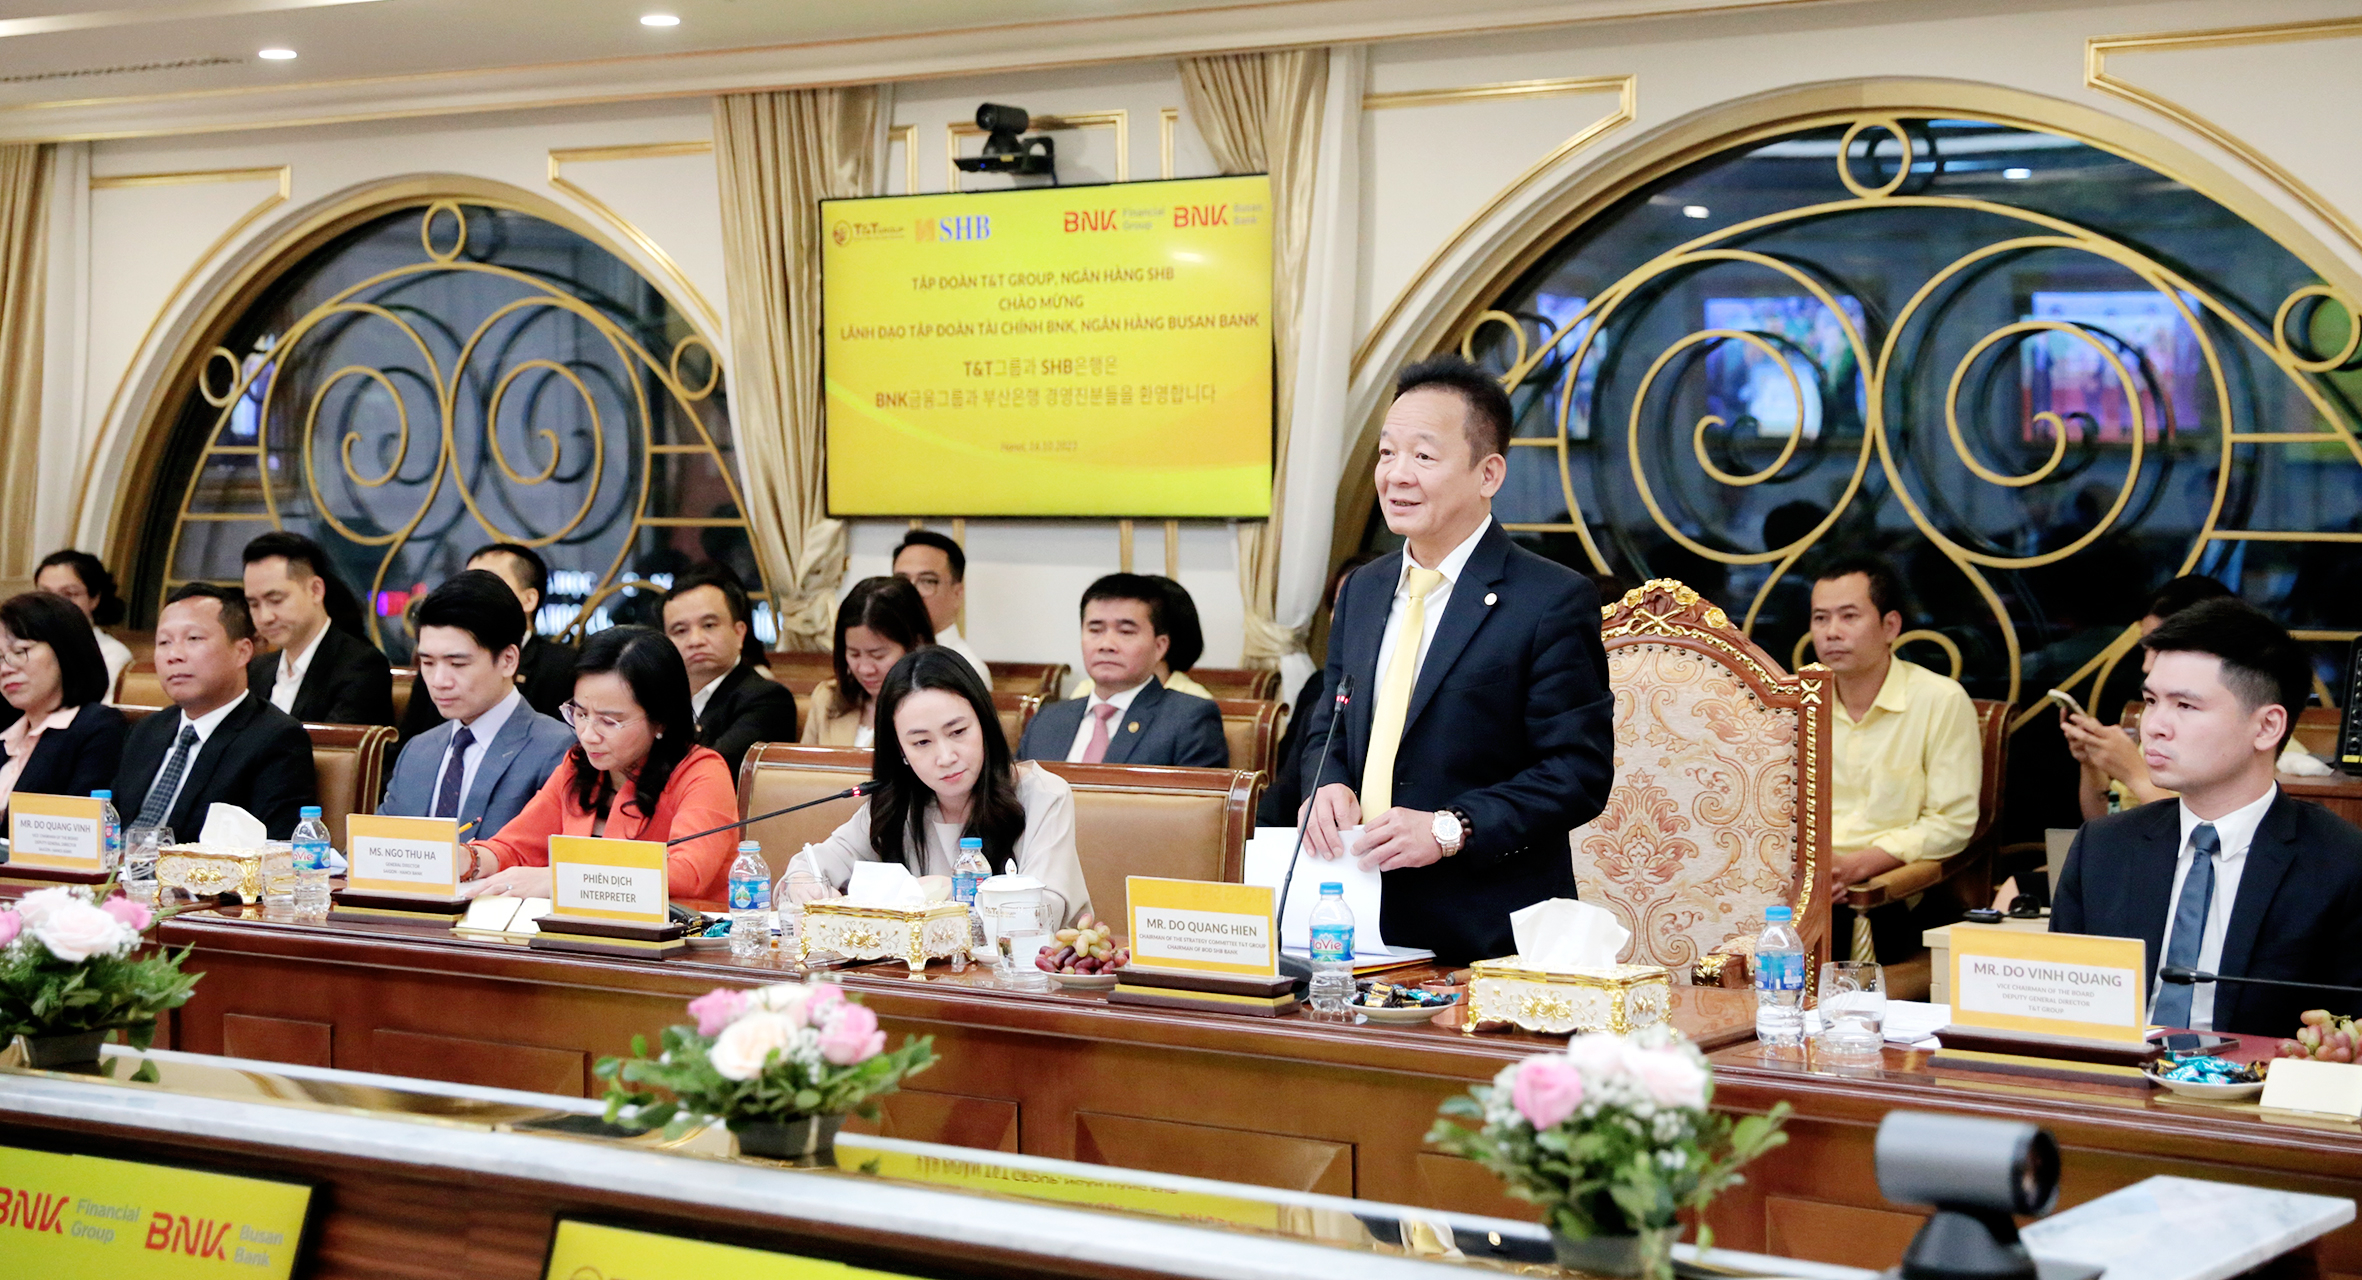 Ông Đỗ Quang Hiển – Chủ tịch HĐQT SHB tin tưởng sự hợp tác trong thời gian tới của SHB và Ngân hàng Busan sẽ góp phần thúc đẩy hợp tác phát triển giữa các doanh nghiệp Việt Nam – Hàn Quốc